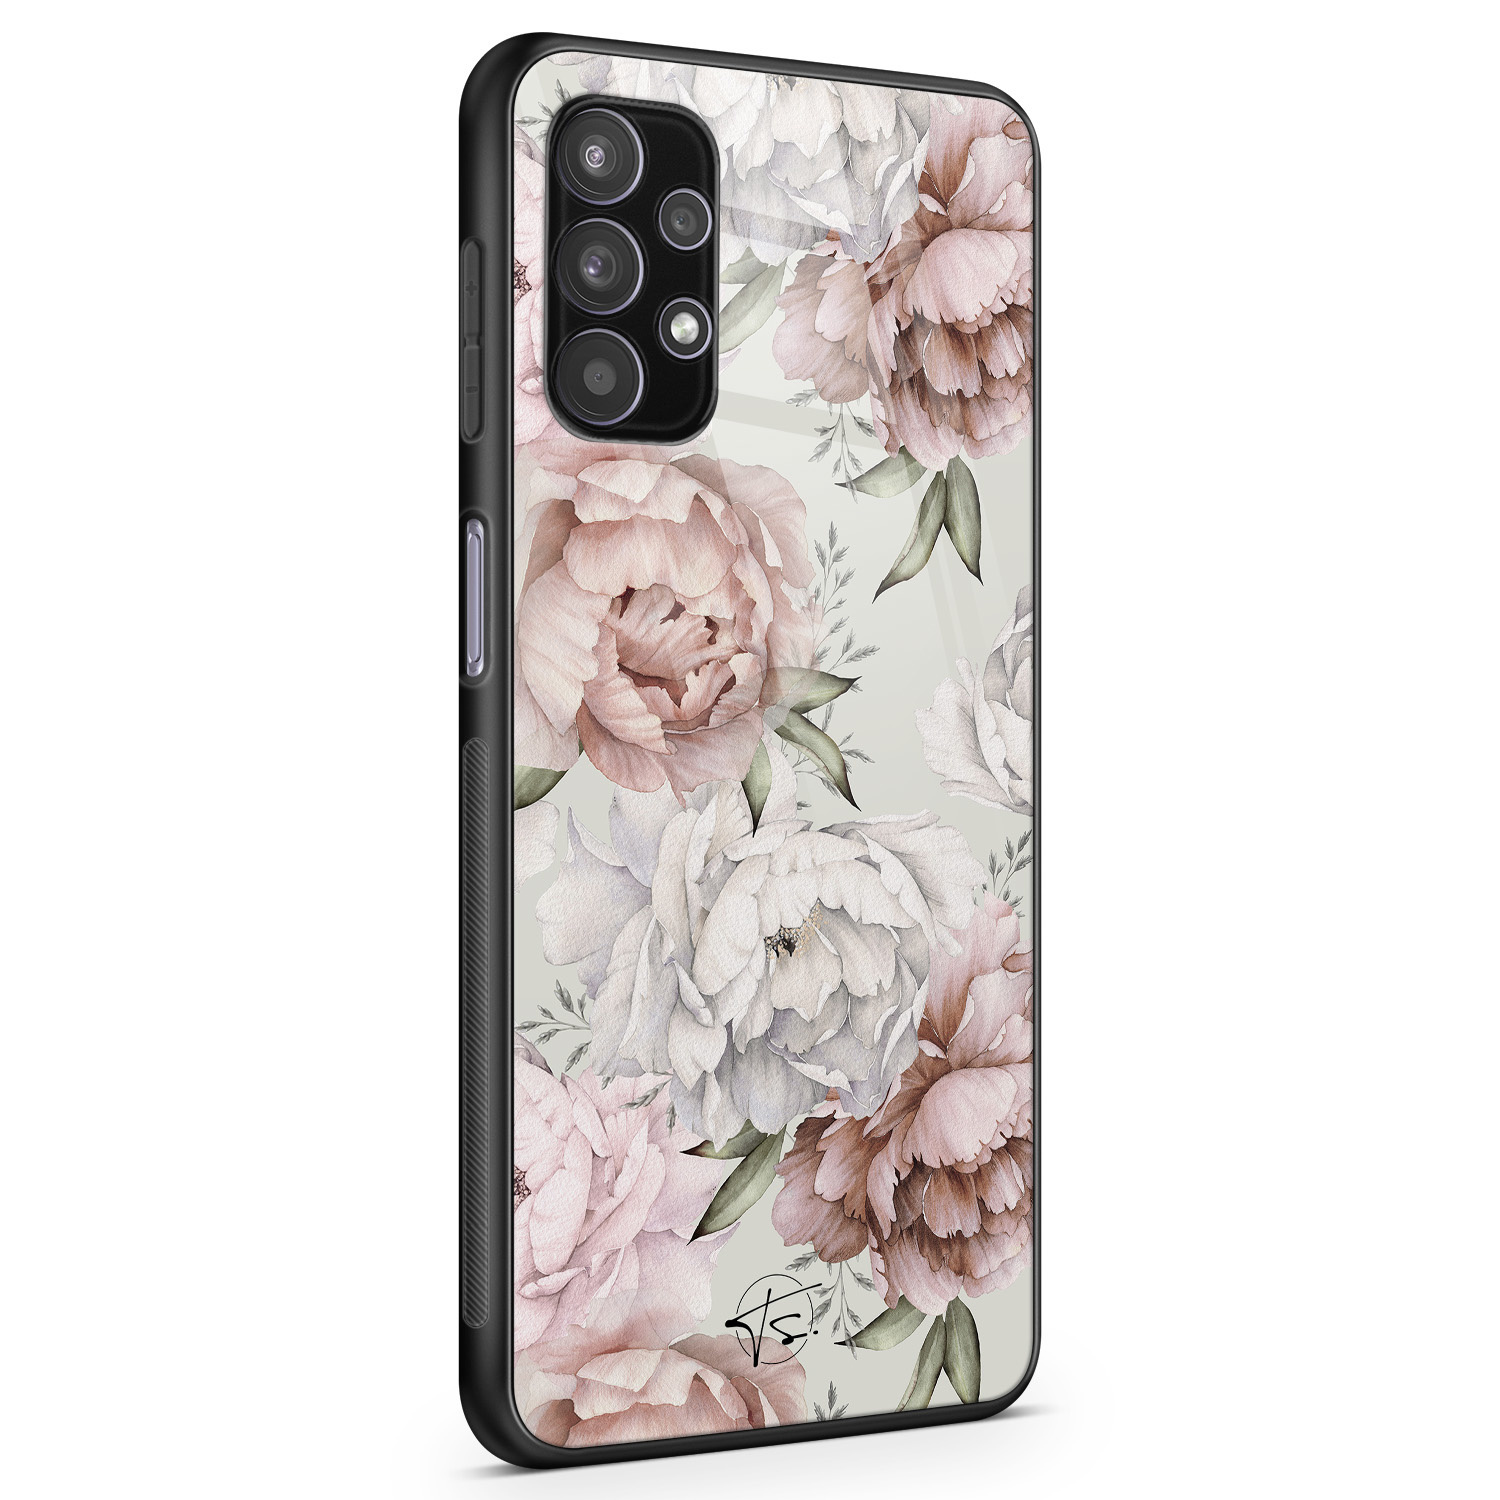 Telefoonhoesje Store Samsung Galaxy A32 5G hoesje glas - Classy flowers